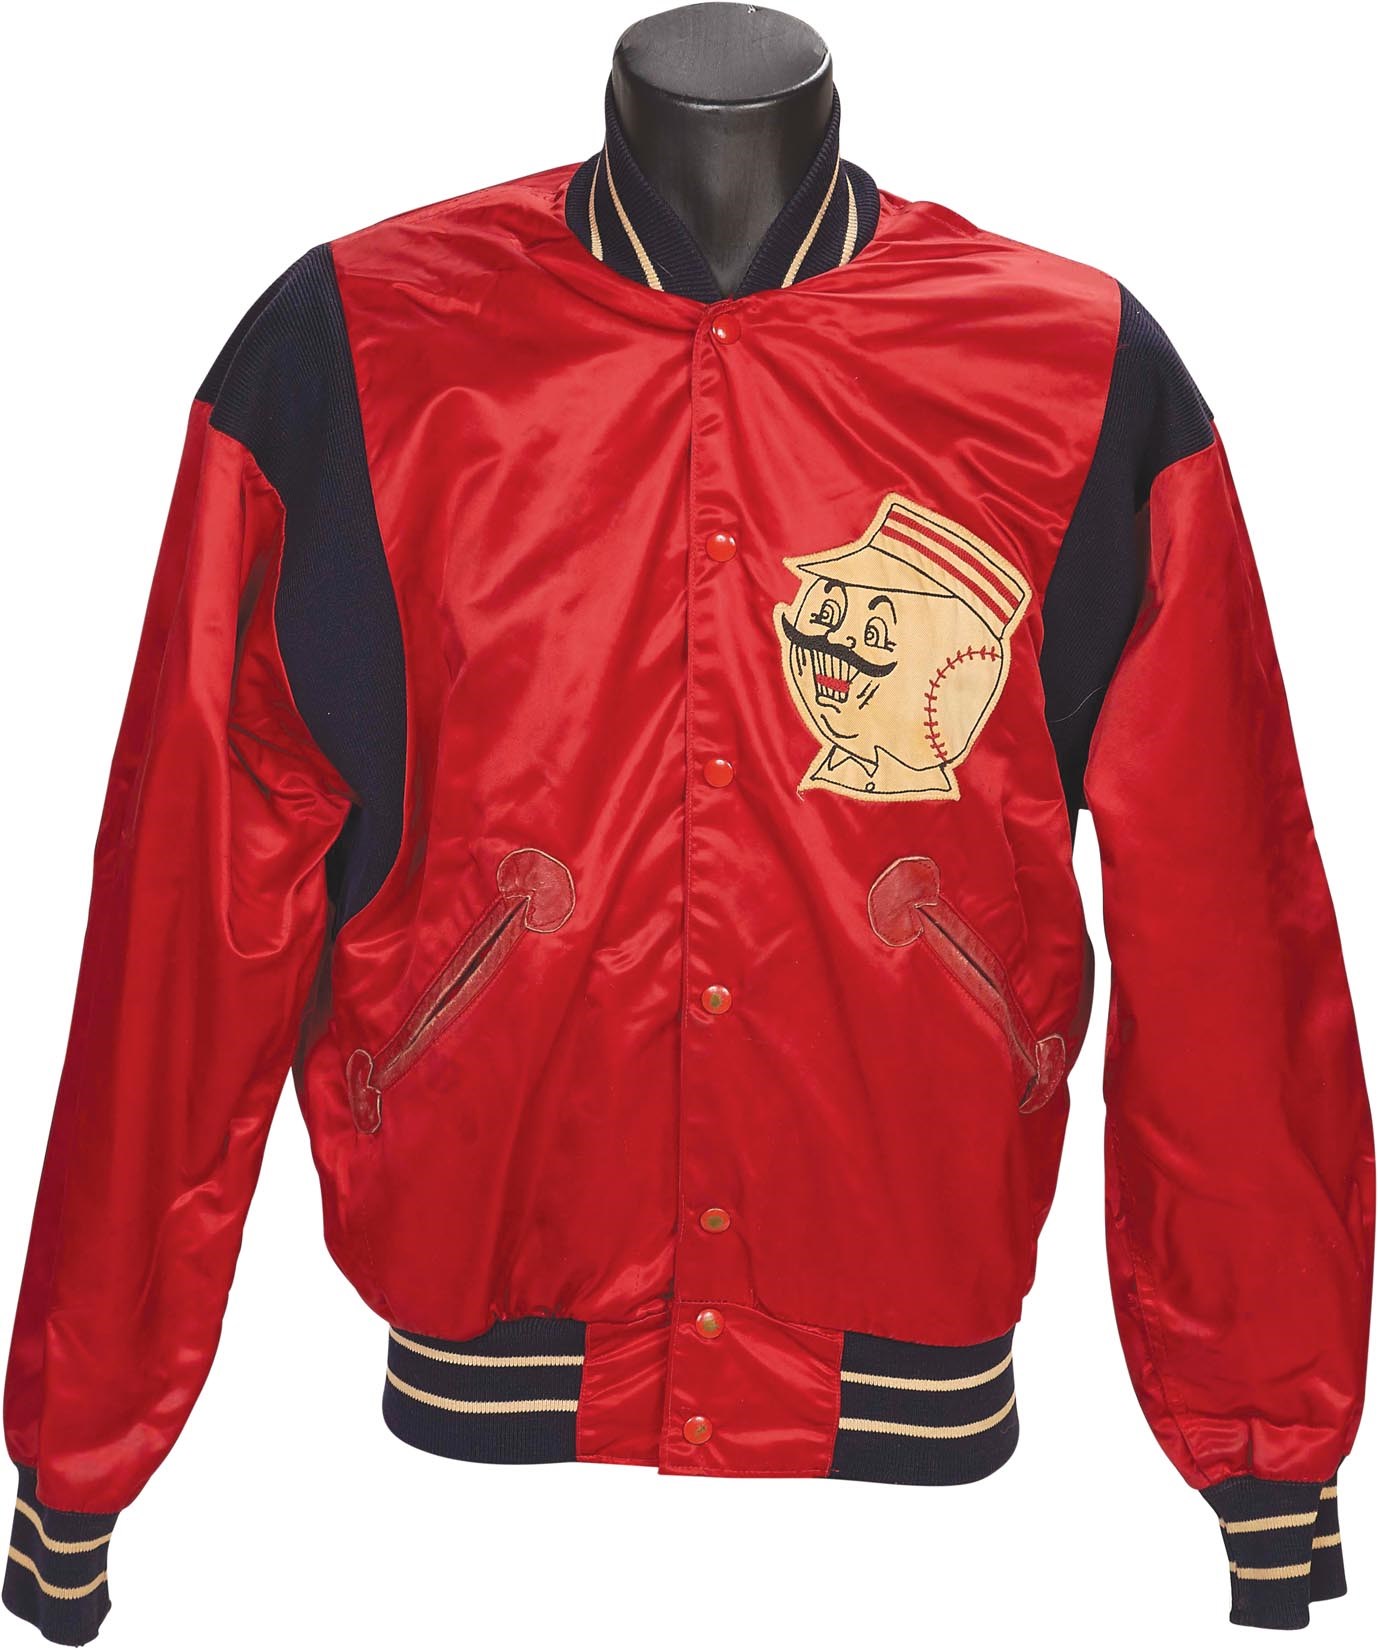 Bernie Stowe Cincinnati Reds Collection - 1962 Leo Cardenas Cincinnati Reds Jacket